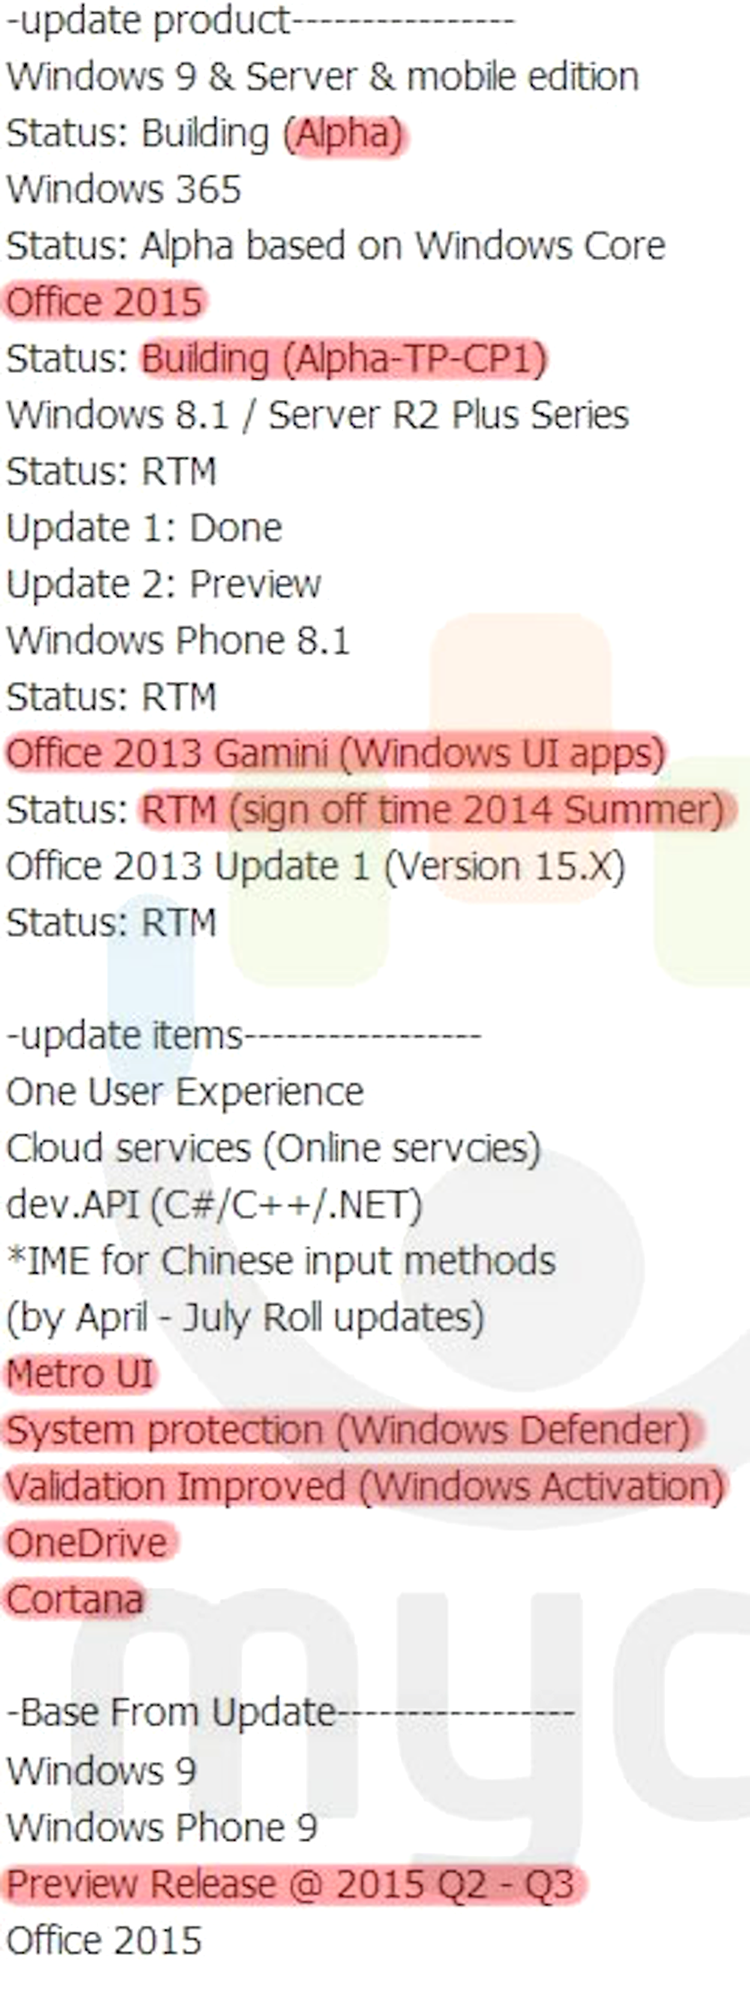 Calendarul de lansări Windows 9, dezvăluit într-un document Microsoft